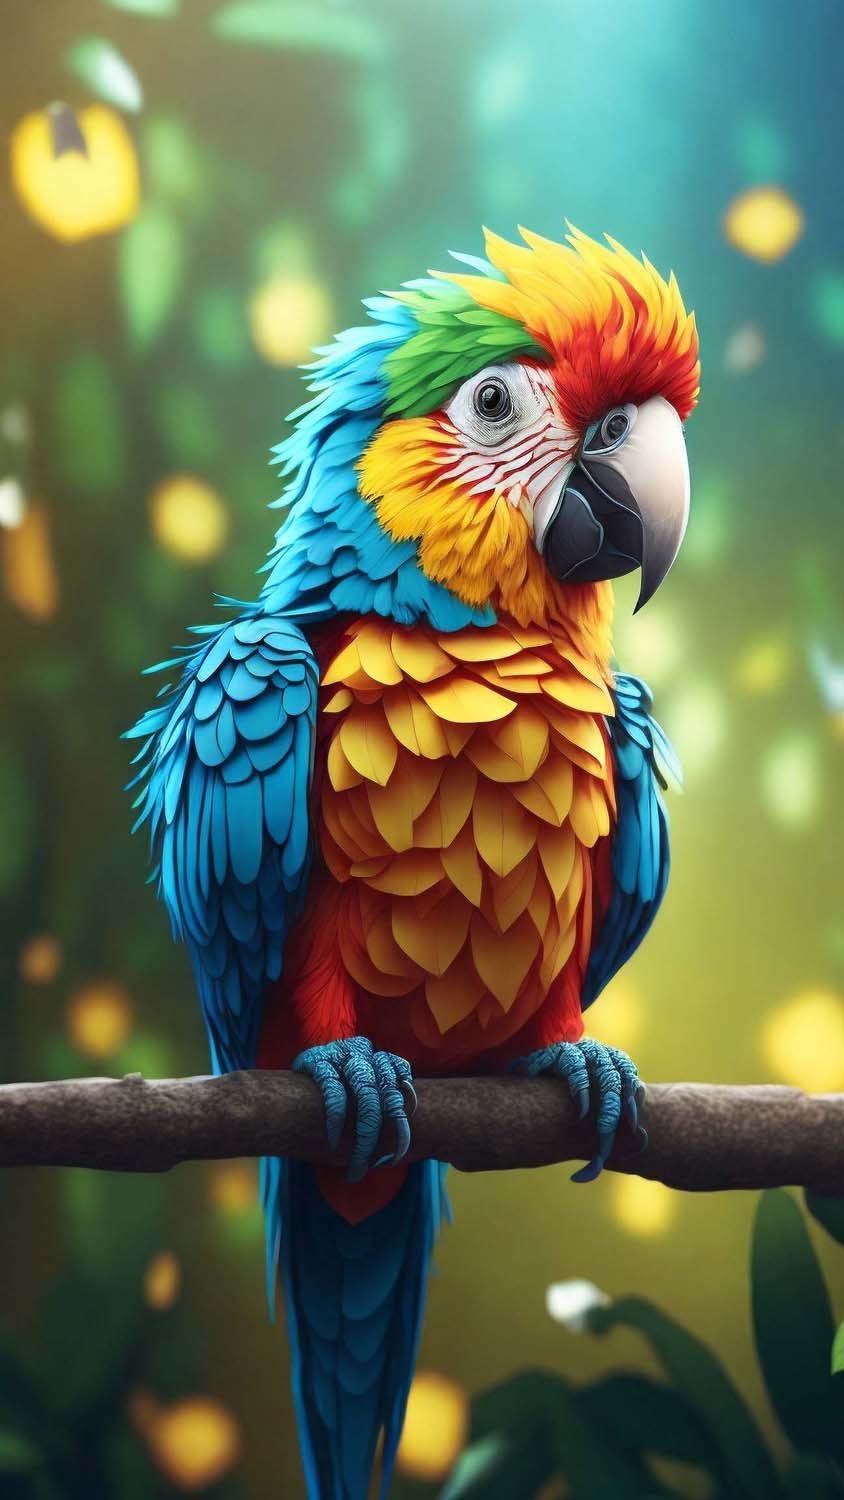 Baby Parrot iPhone Wallpaper 4K